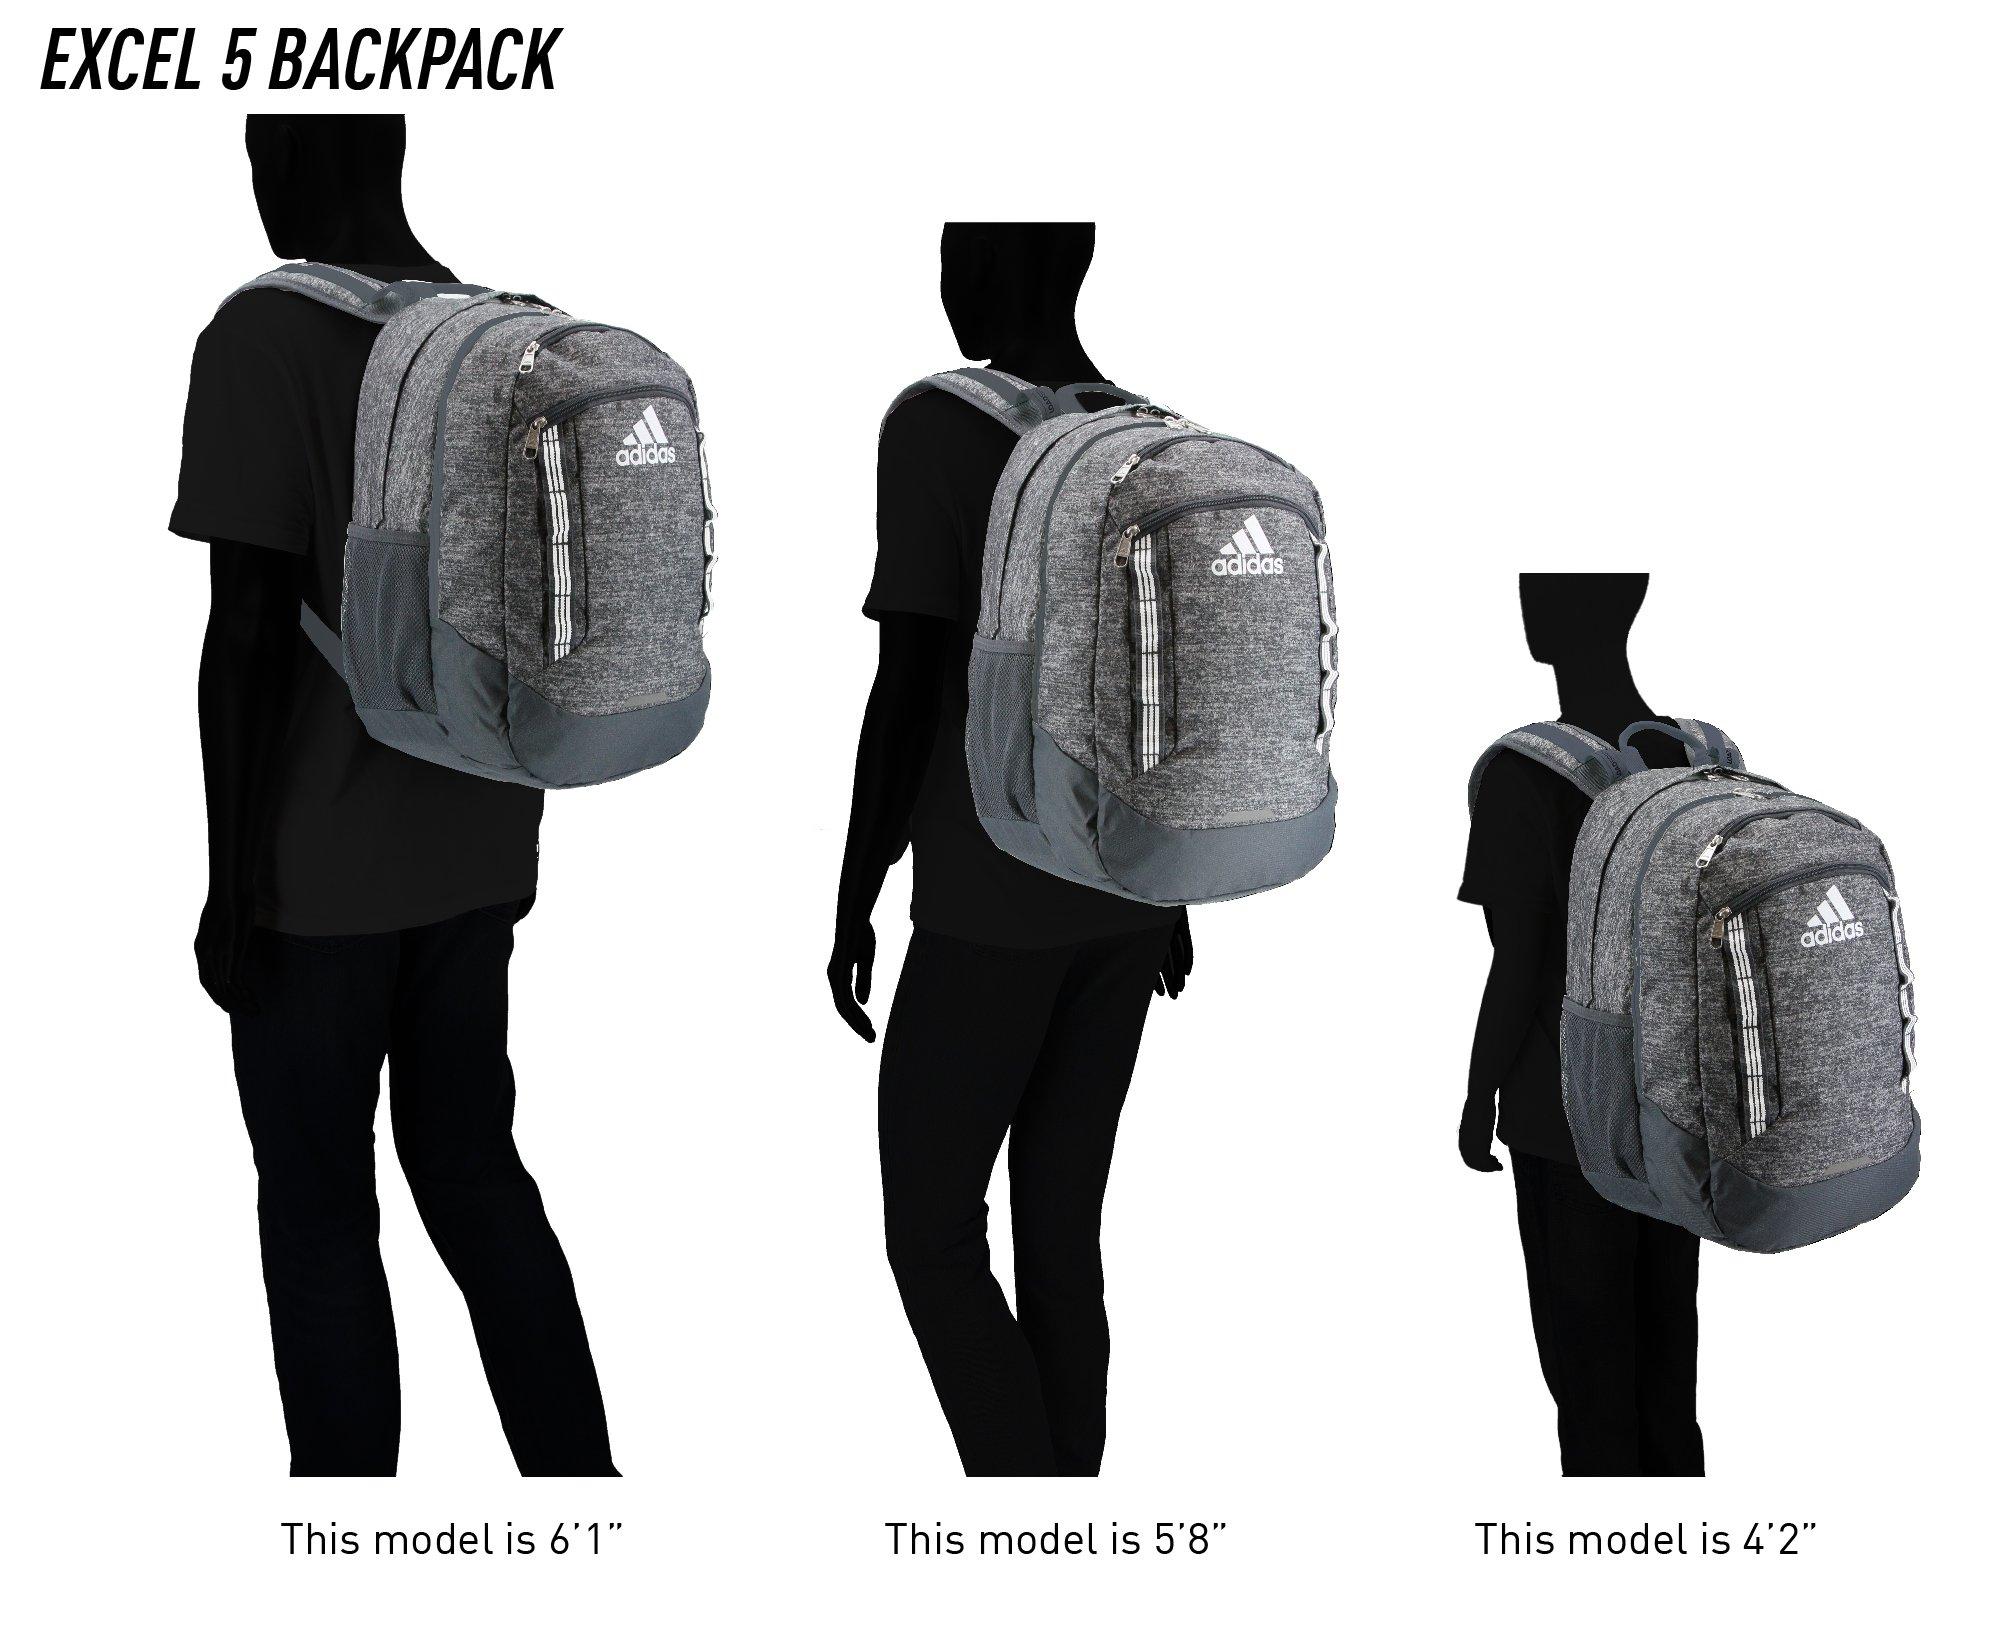 adidas prime v backpack white